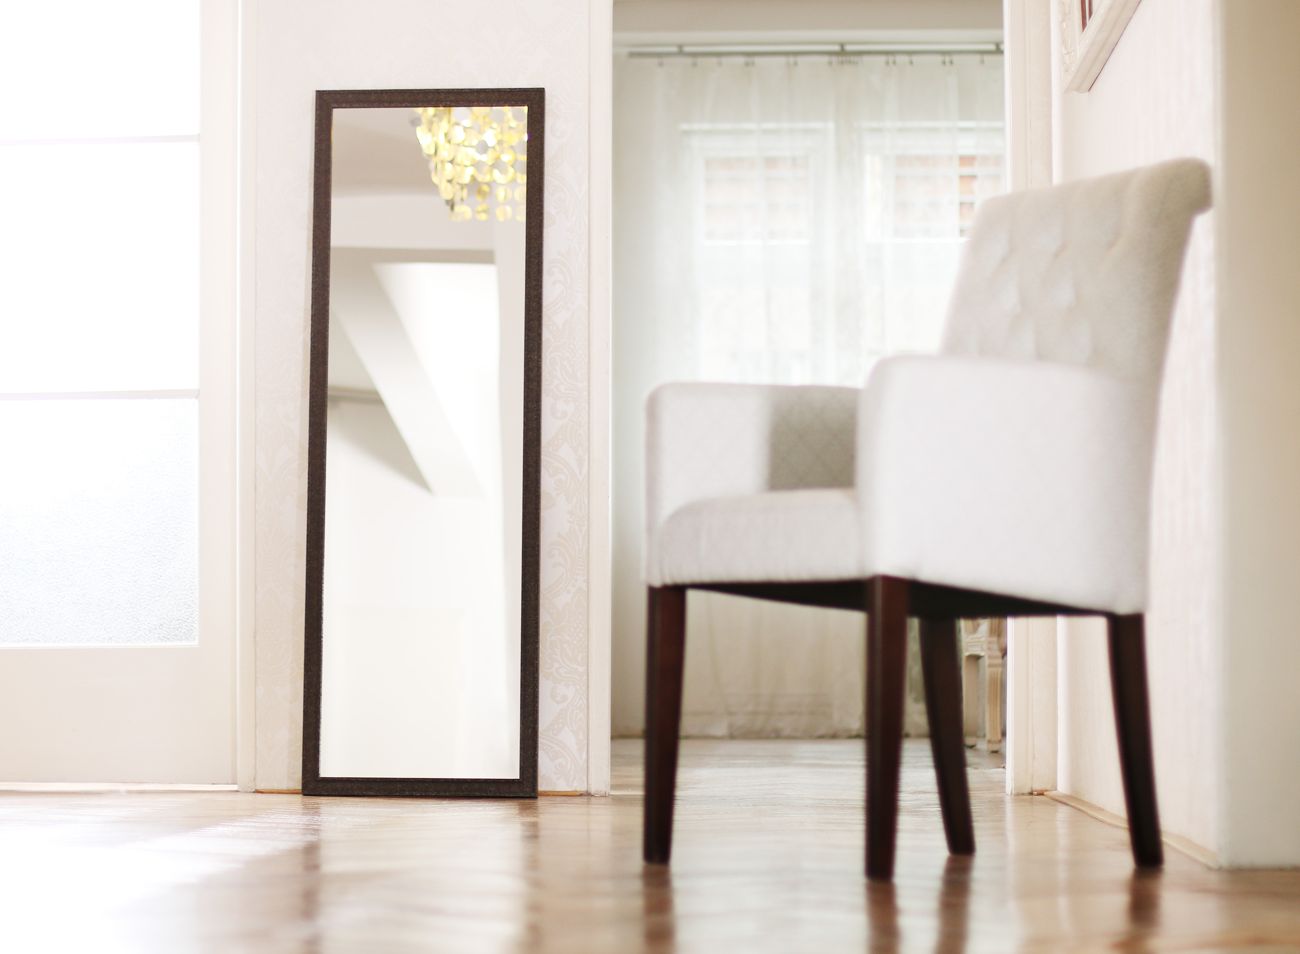 Moderní designové zrcadlo v industriálním designu zrezlého železa v obývacím pokoji | © Frame-it.cz